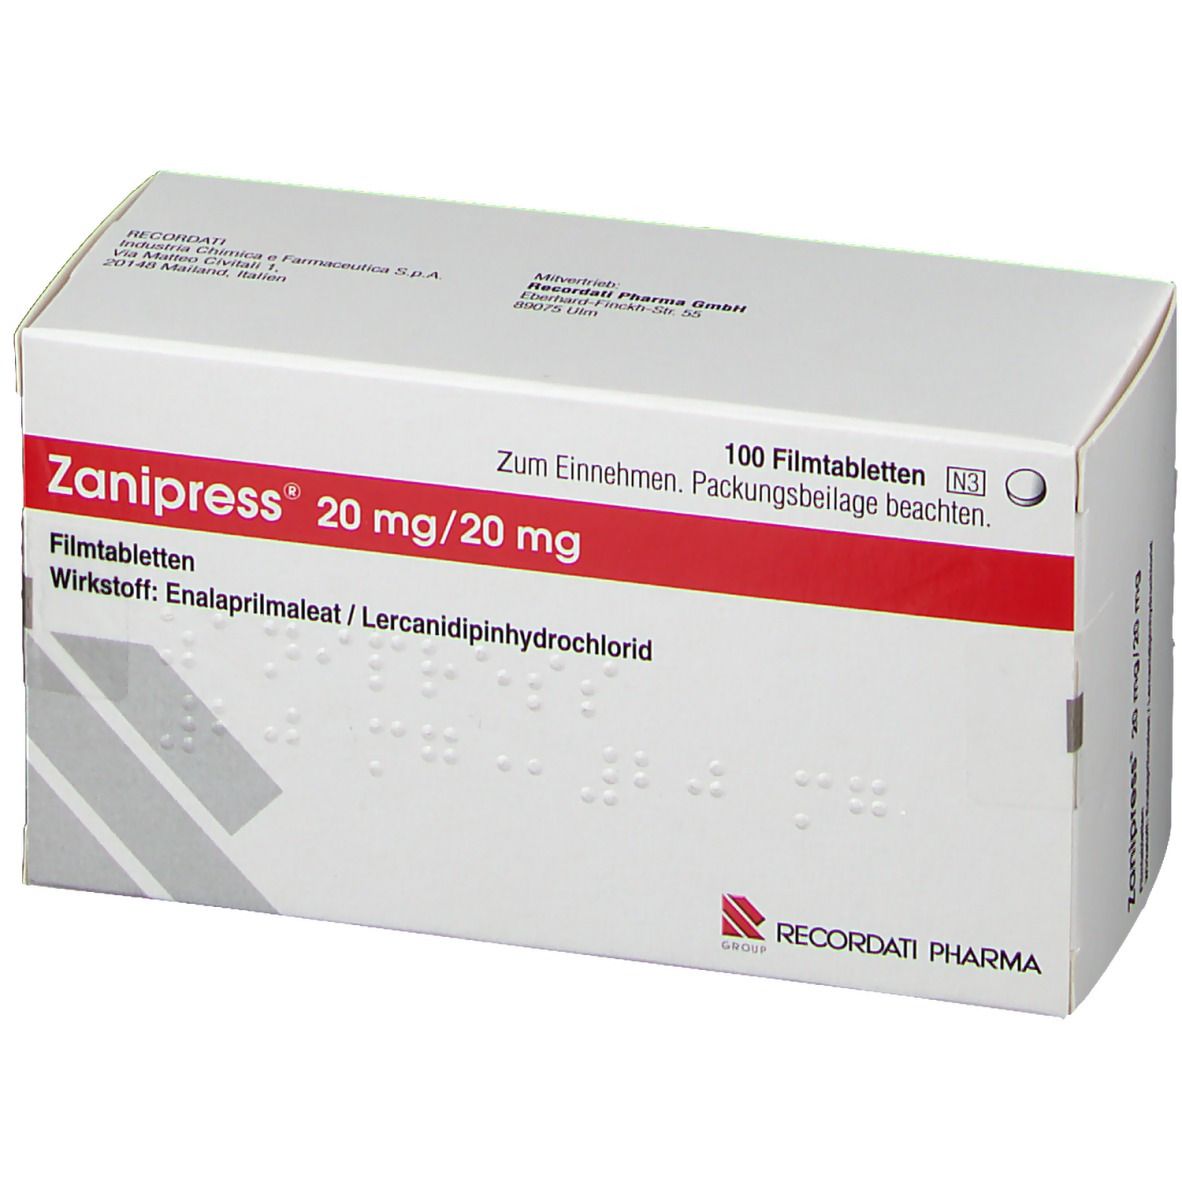 Zanipress® 20 mg/20 mg